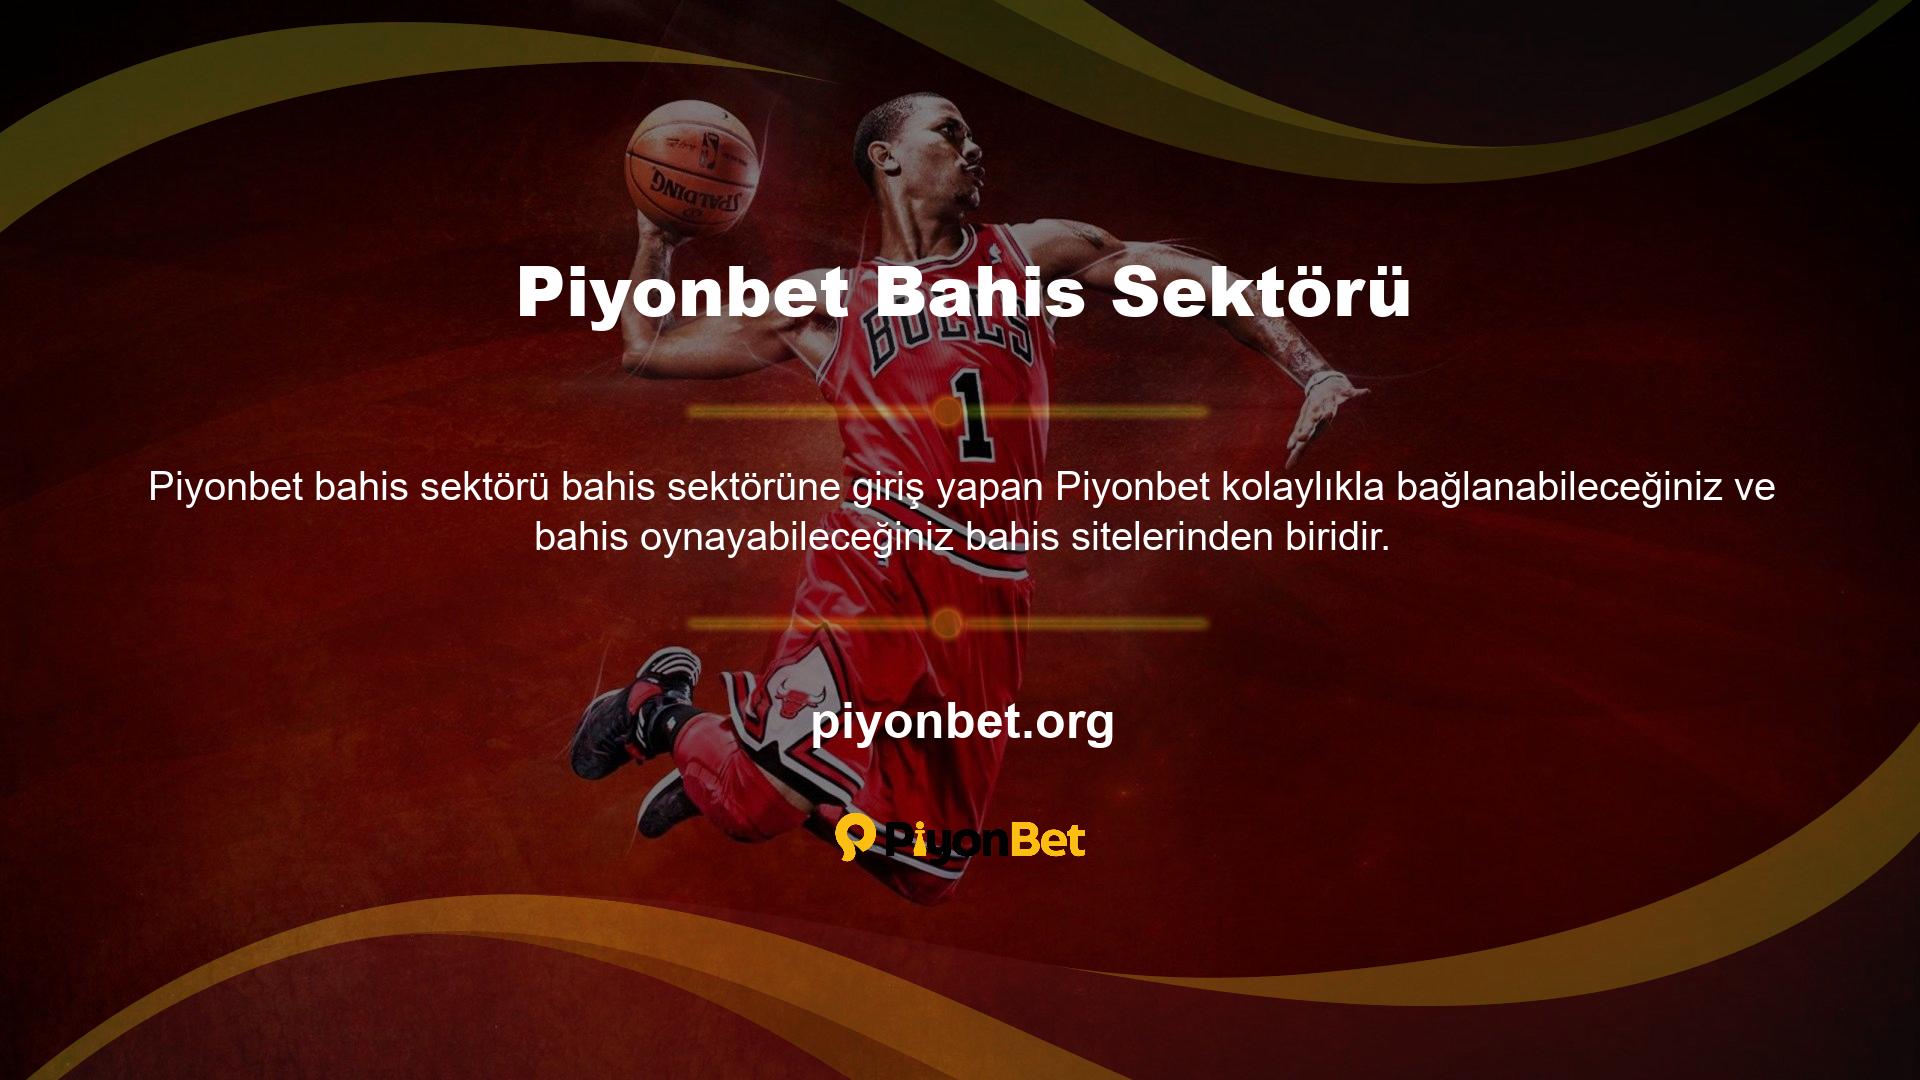 Türkiye'de hiçbir Casino sitesi kapanma tehlikesiyle karşı karşıya değildir ve Piyonbet Casino sektörü açık olmaya devam etmektedir